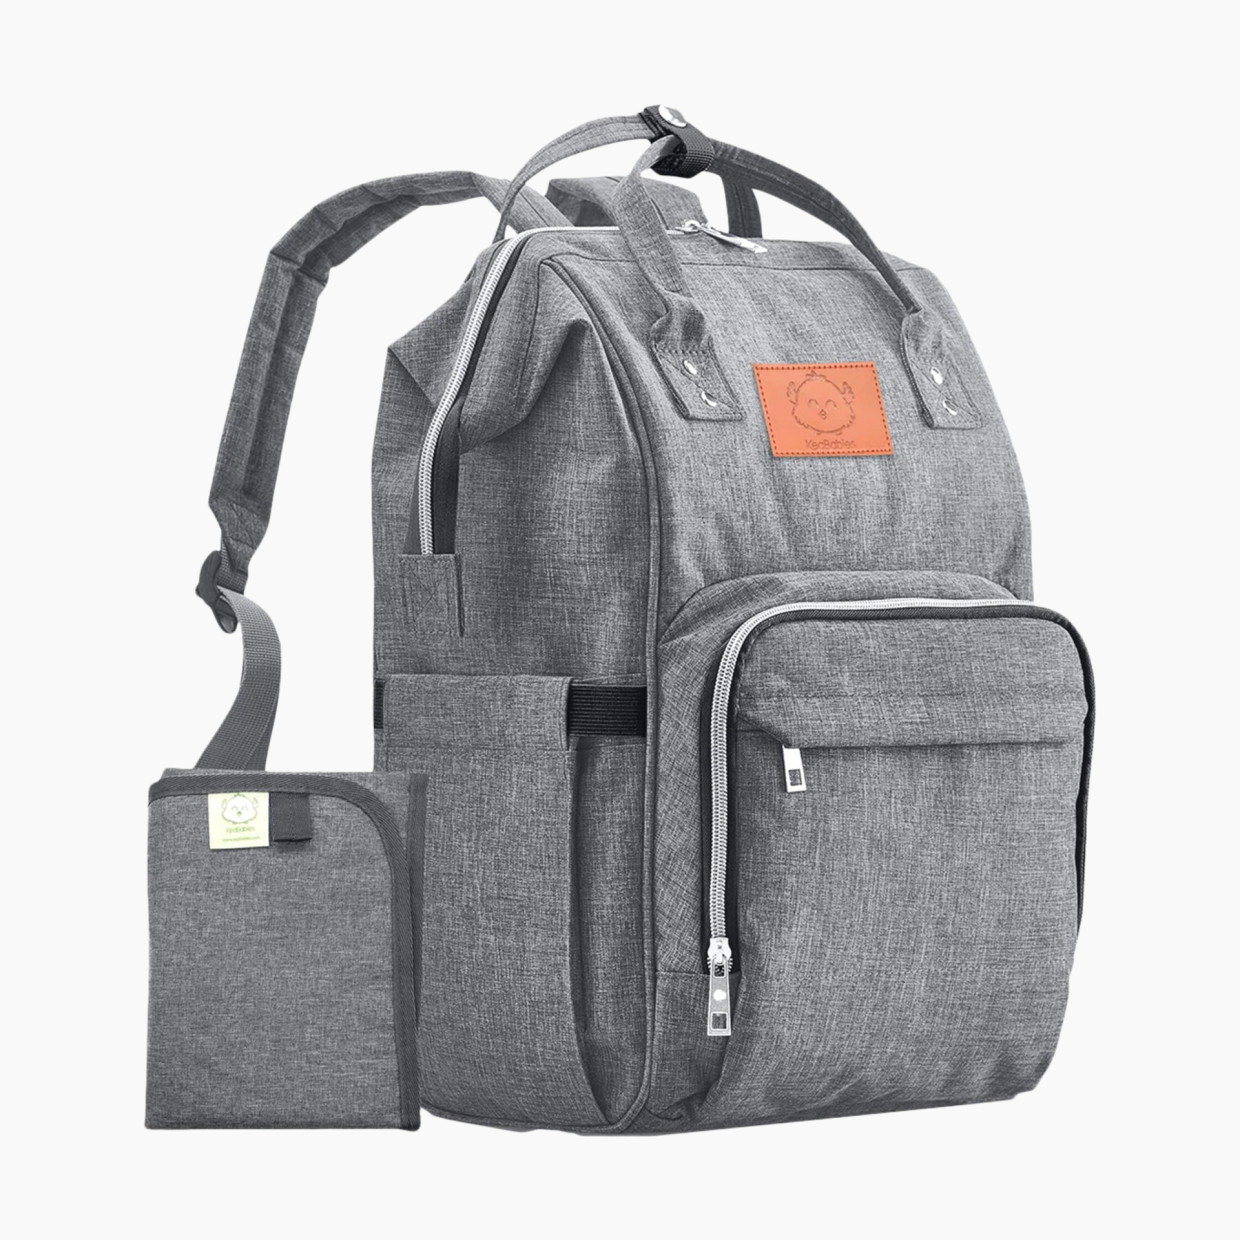 KeaBabies Original Diaper Backpack - Classic Gray.